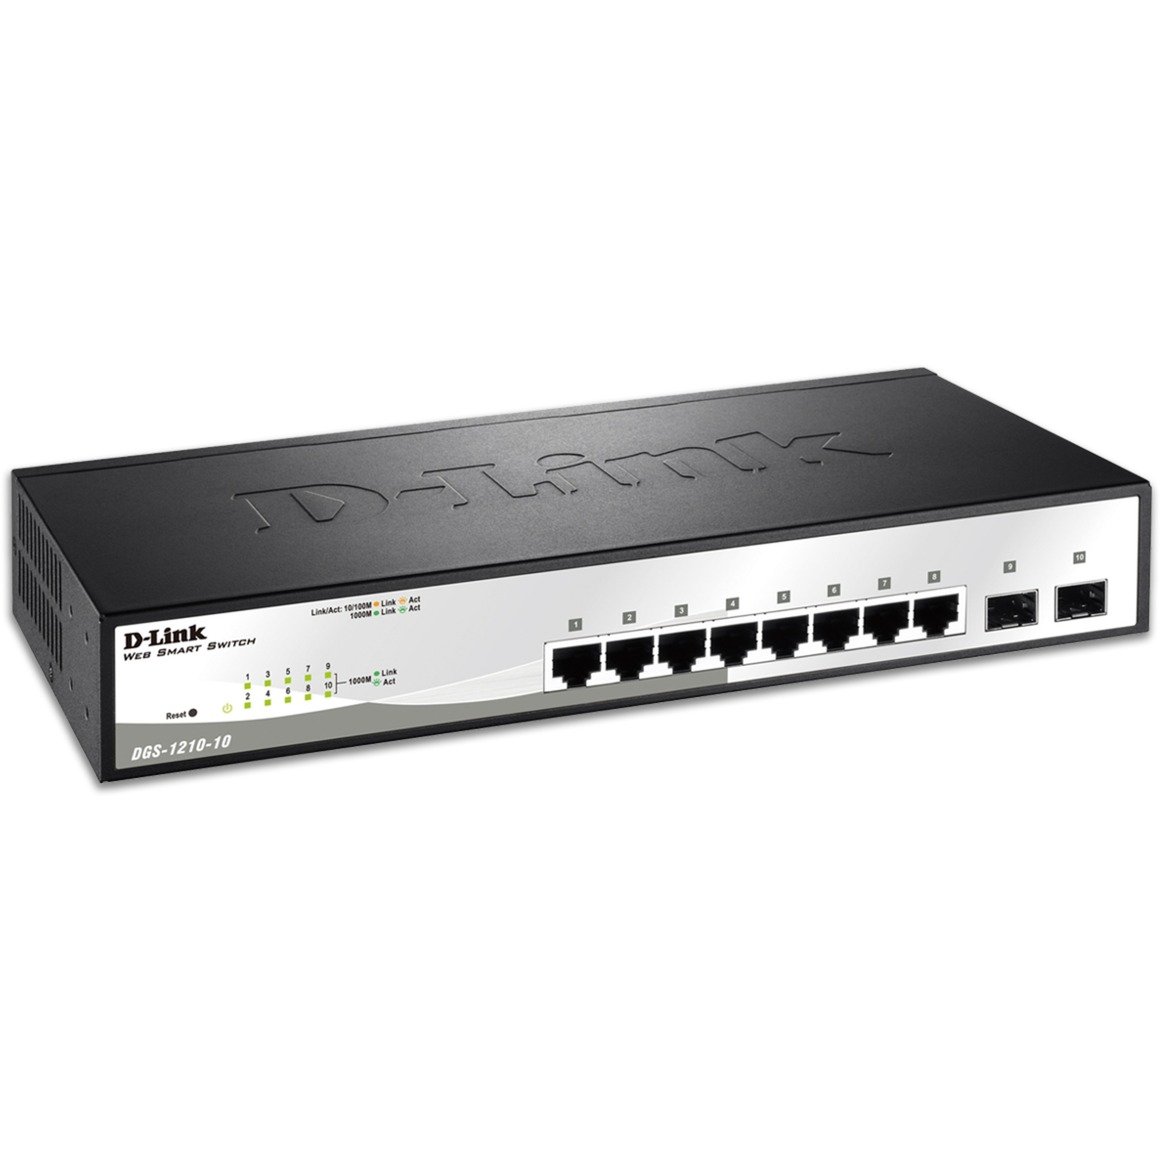 DGS-1210-10 łącza sieciowe Zarządzany L2 Gigabit Ethernet (10/100/1000) Czarny, Szary 1U, Przełącznik